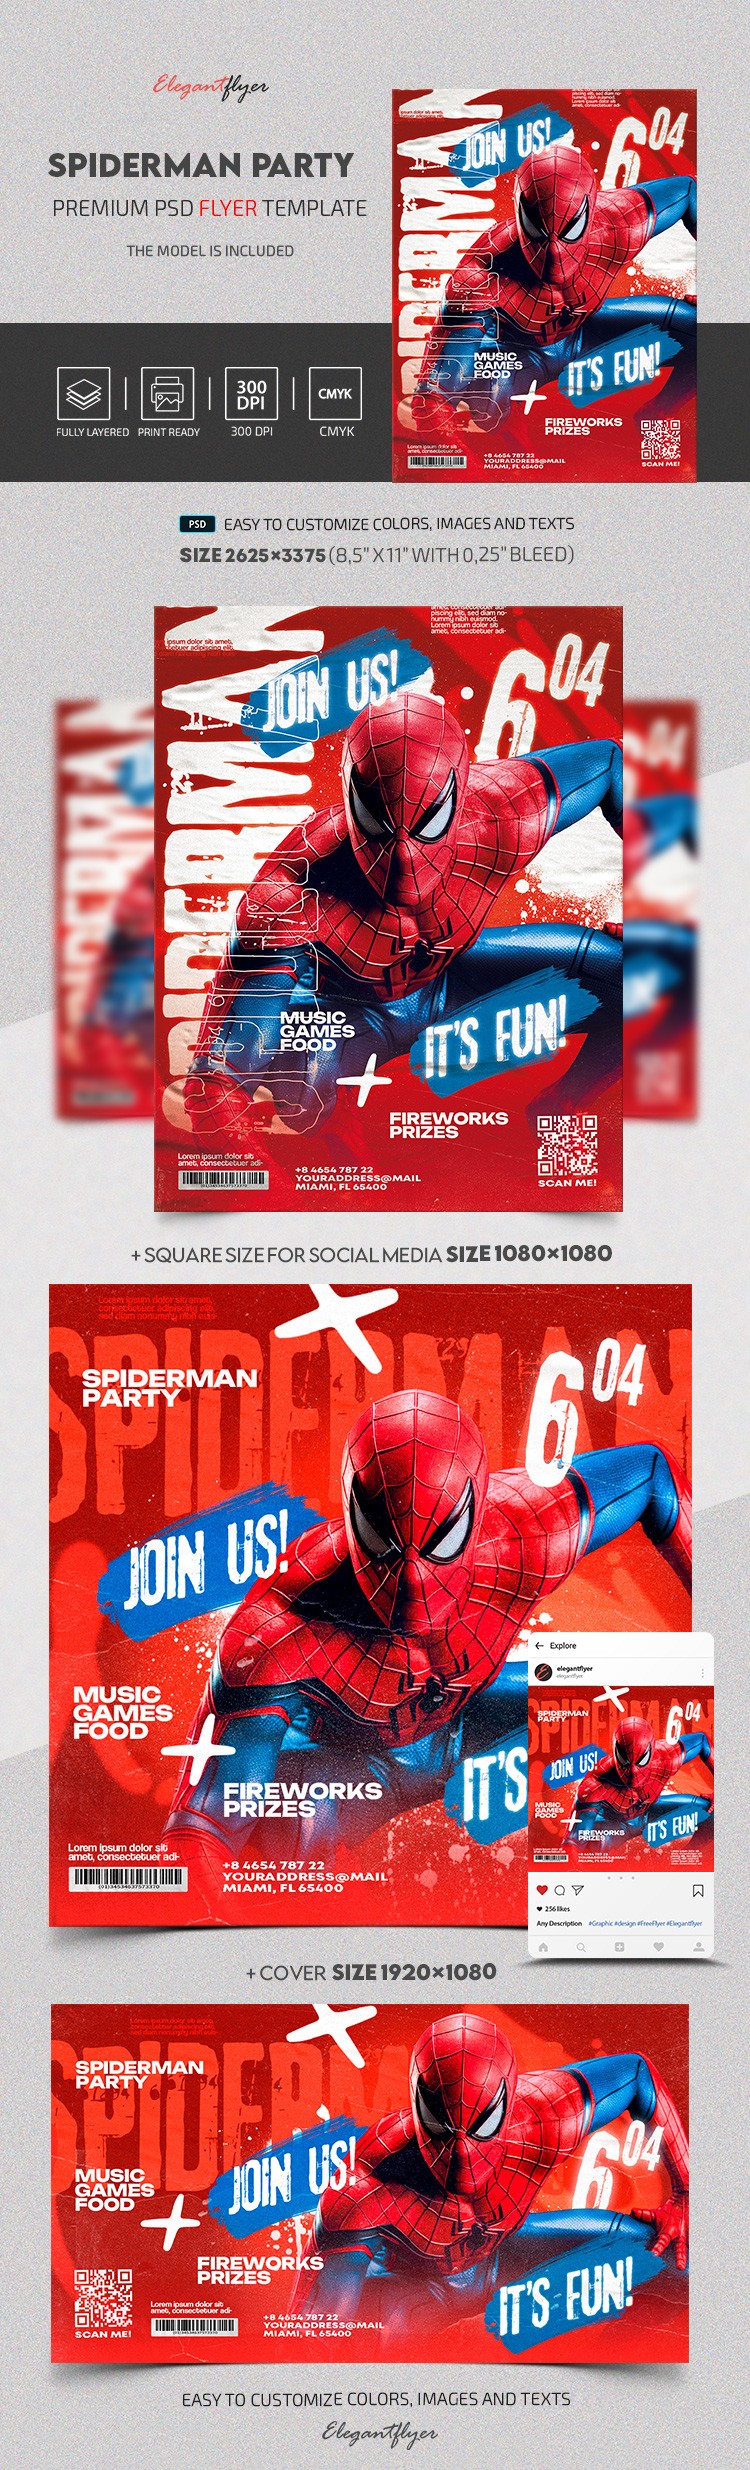 Invito di Spiderman by ElegantFlyer